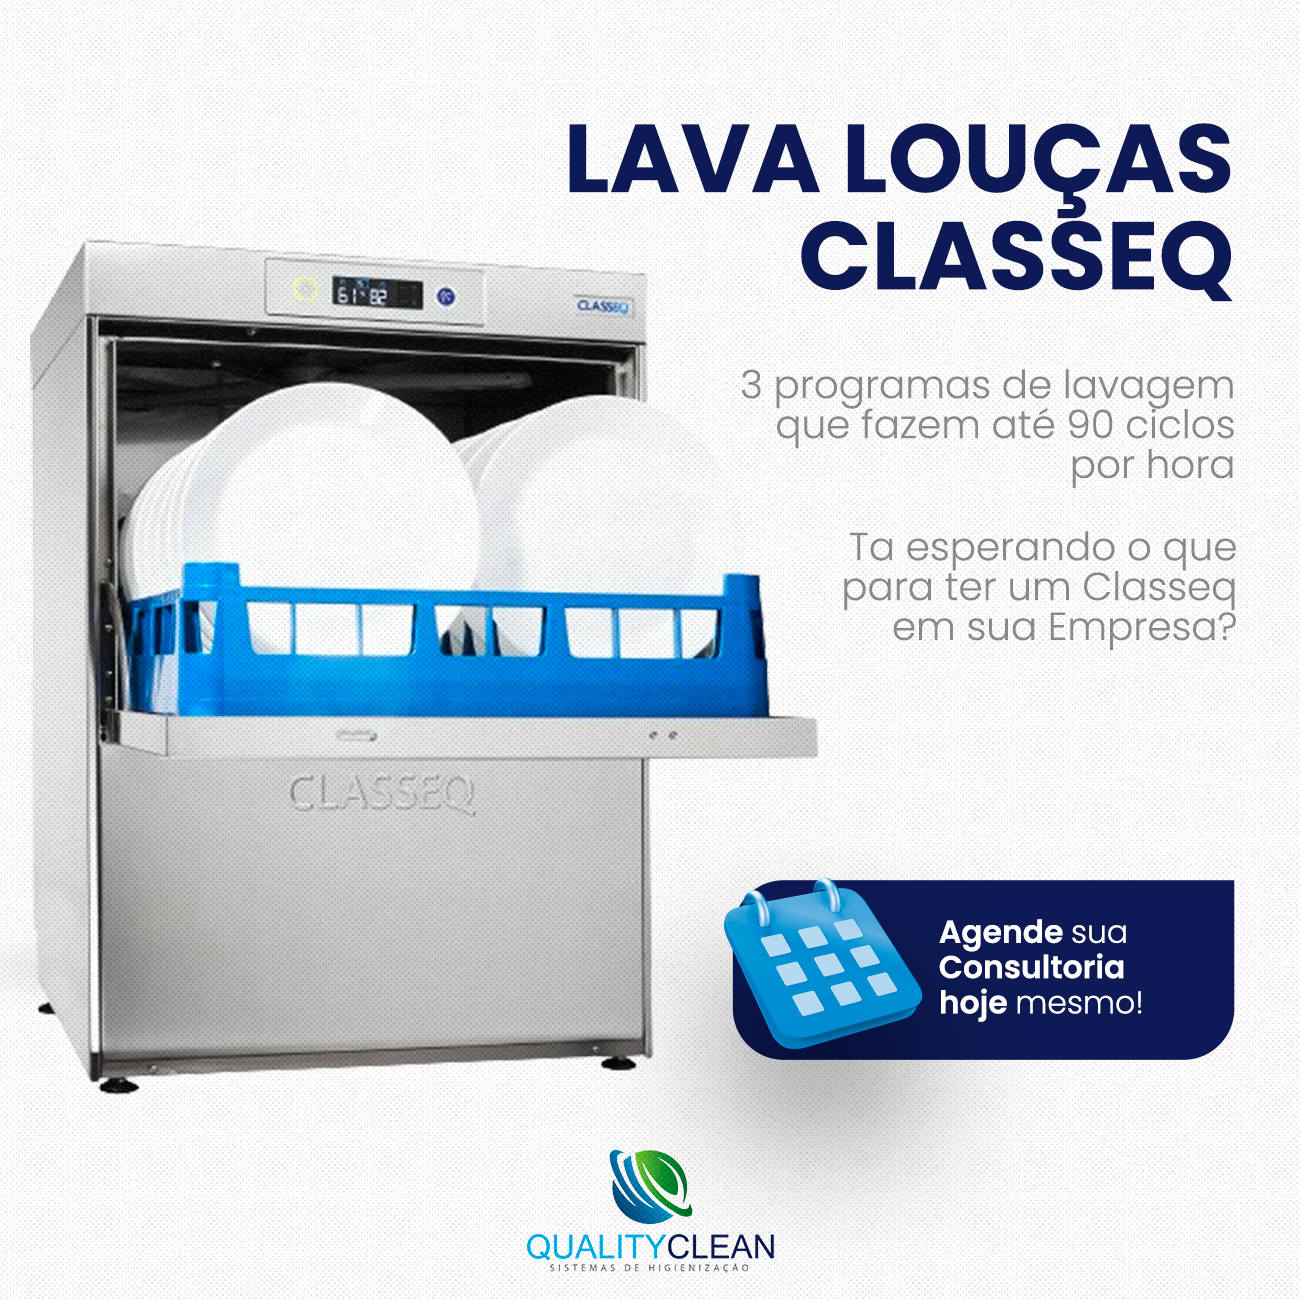 Lava Louças Classeq D3000 - Venda Qualityclean